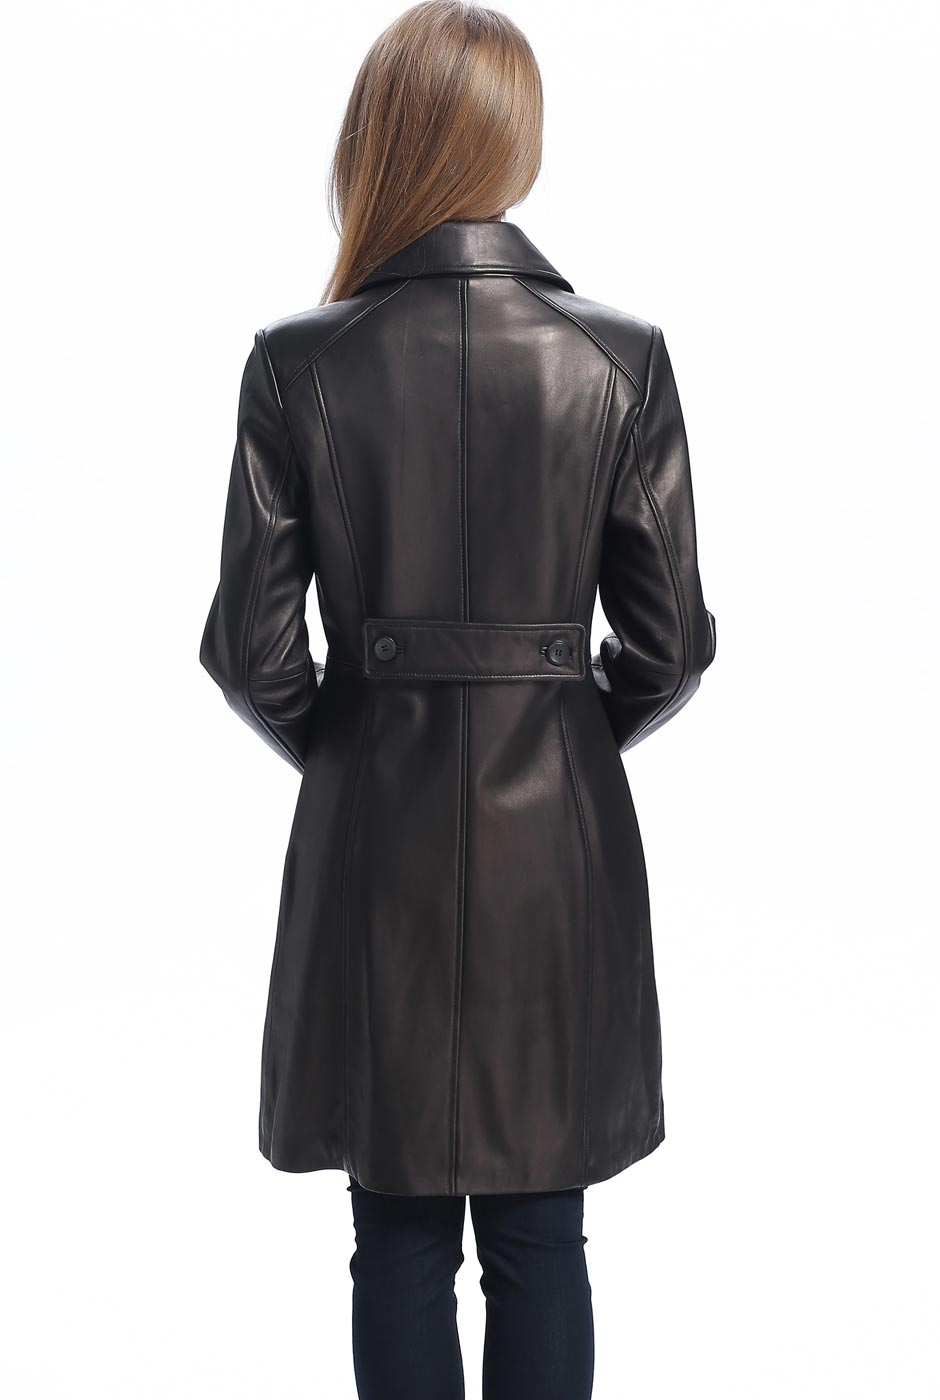 BGSD Women Amber Lambskin Leather Walking Coat